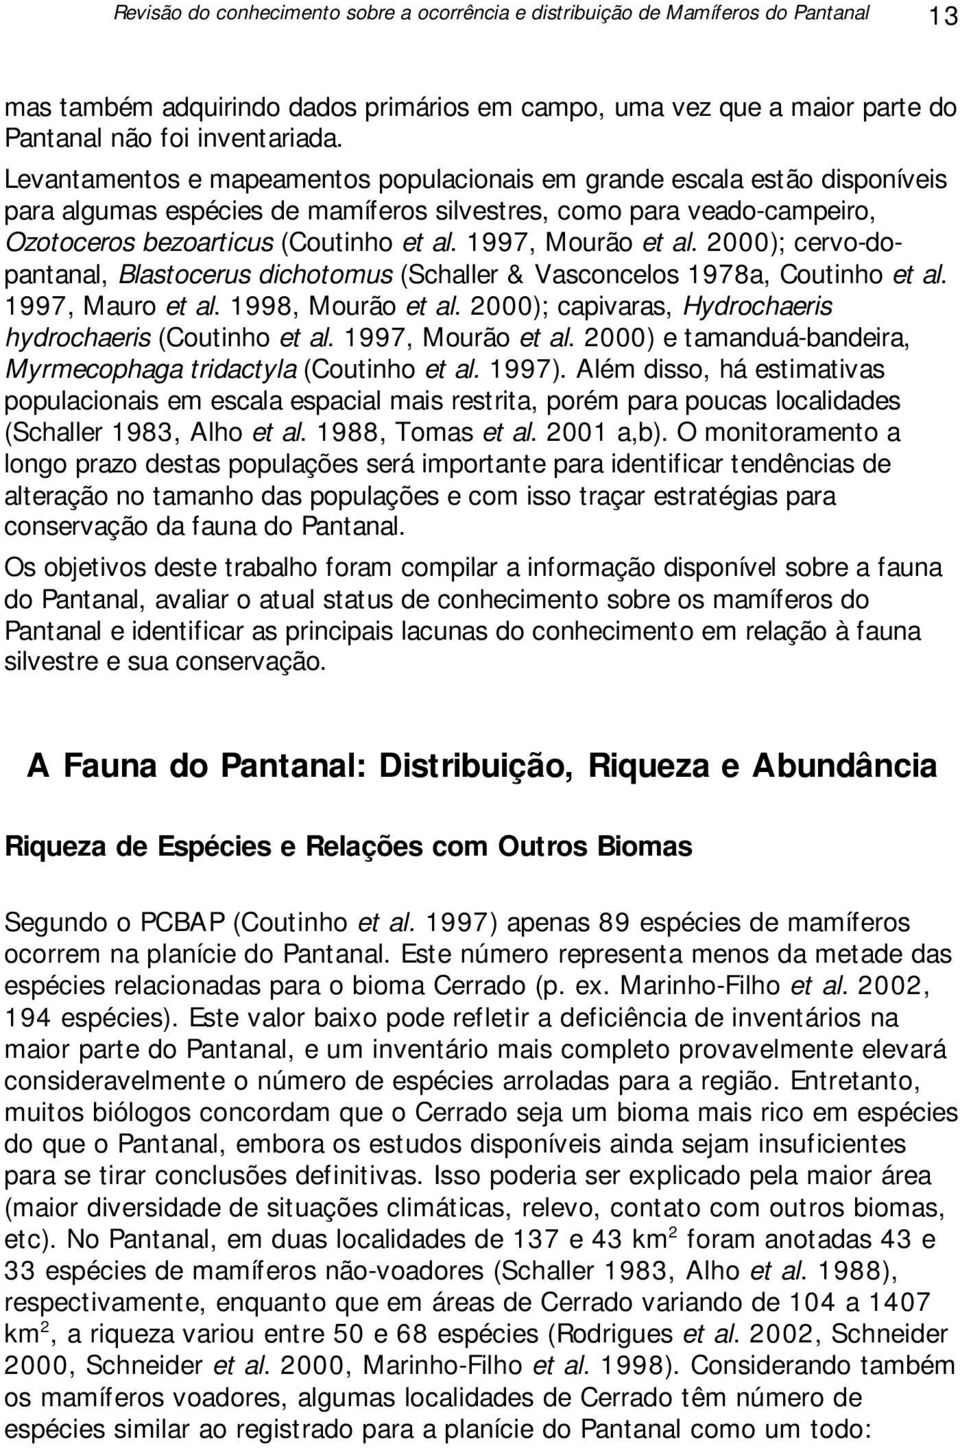 1997, Mourão et al. 2000); cervo-dopantanal, Blastocerus dichotomus (Schaller & Vasconcelos 1978a, Coutinho et al. 1997, Mauro et al. 1998, Mourão et al.